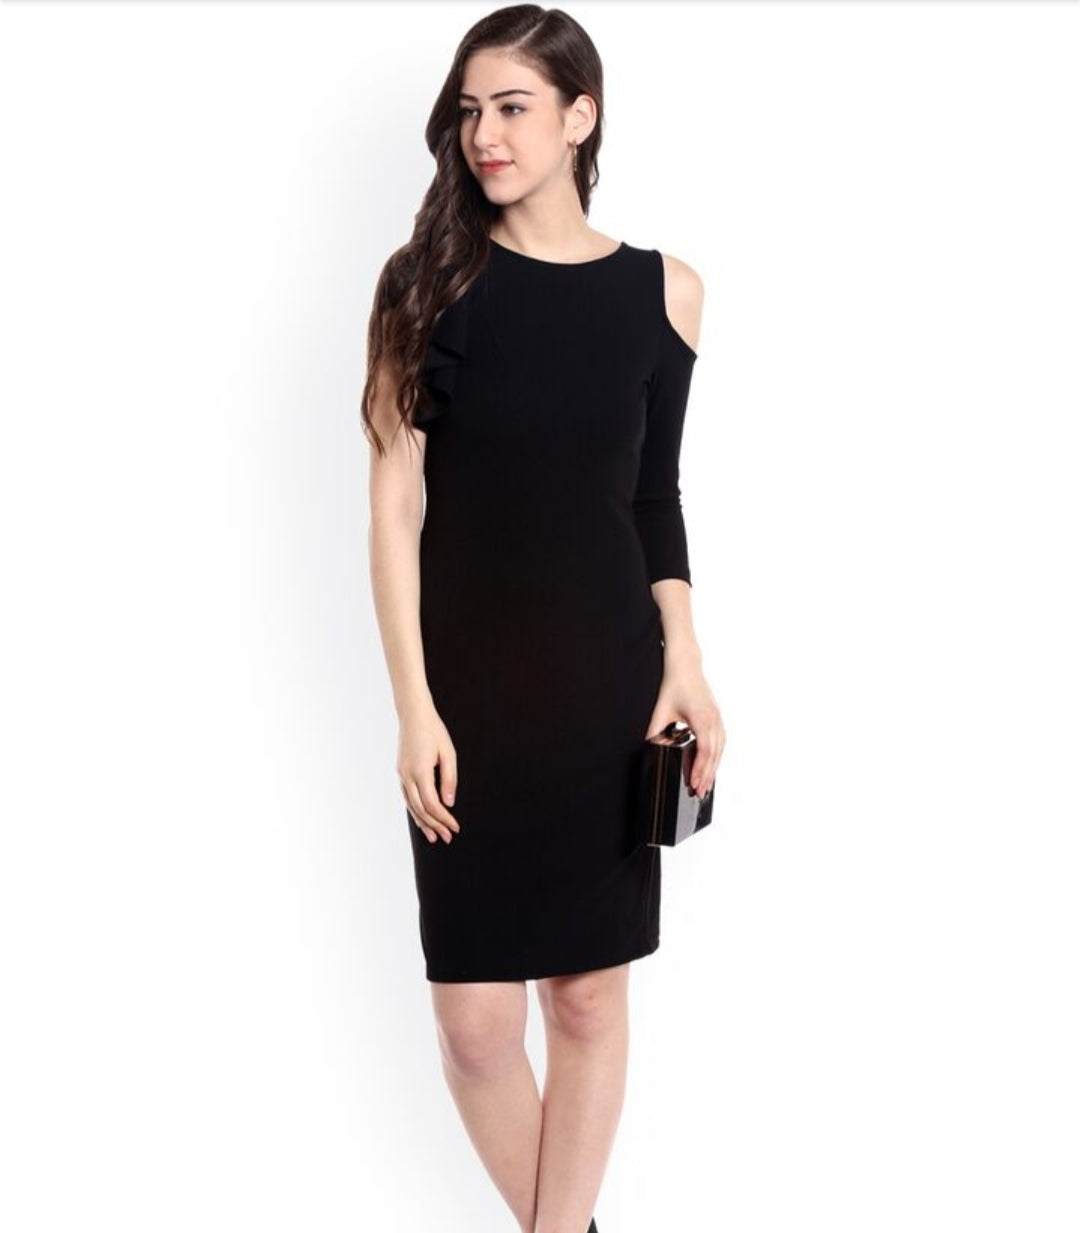 Zara Black Solid One Shoulder Dress